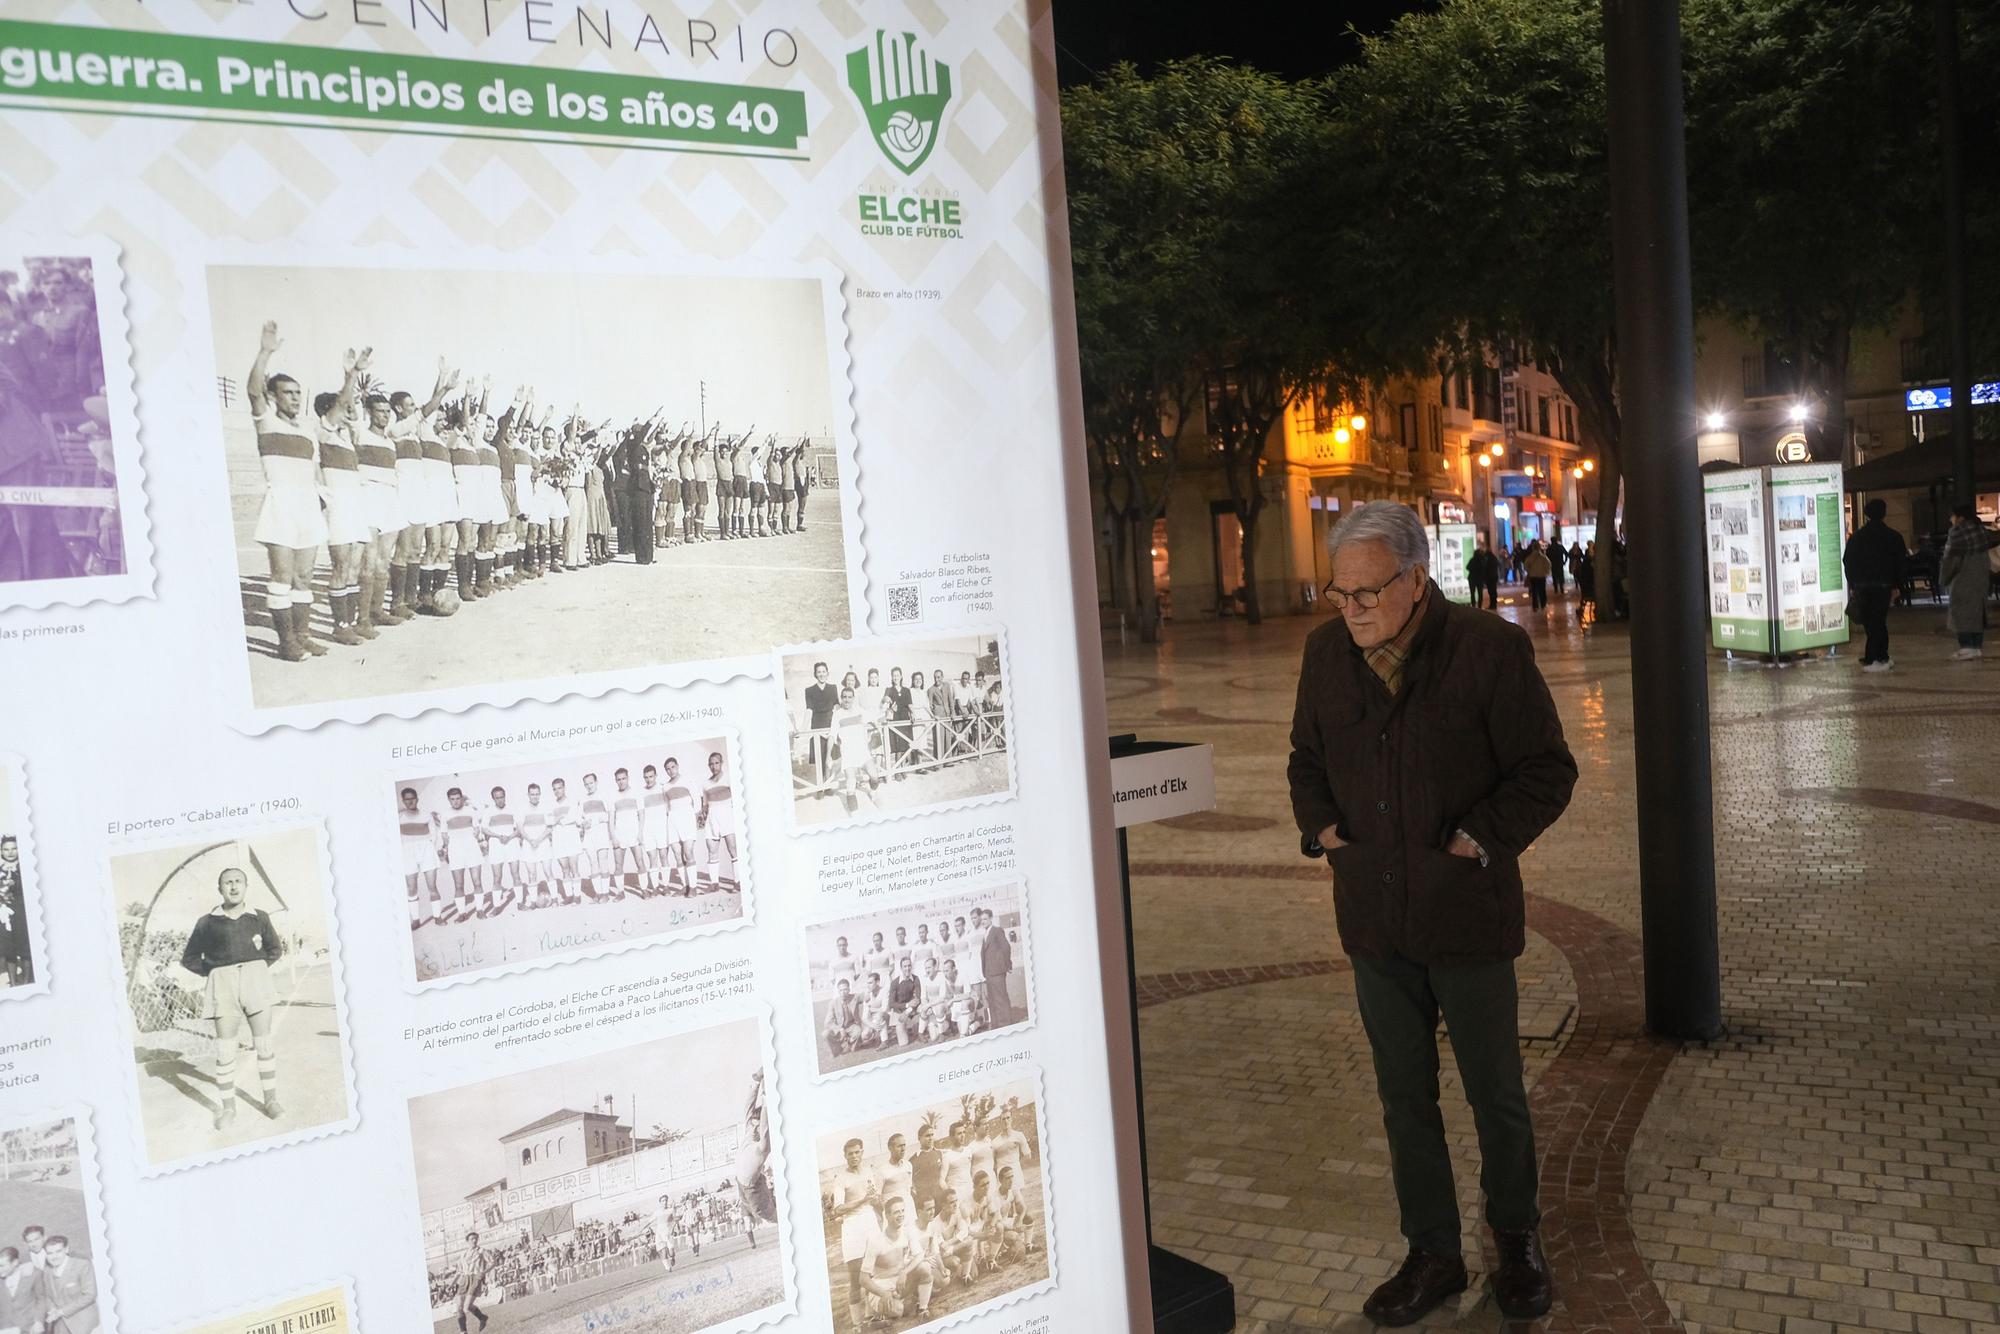 La exposición "100 años de sentimiento franjiverde" llega al centro de la ciudad